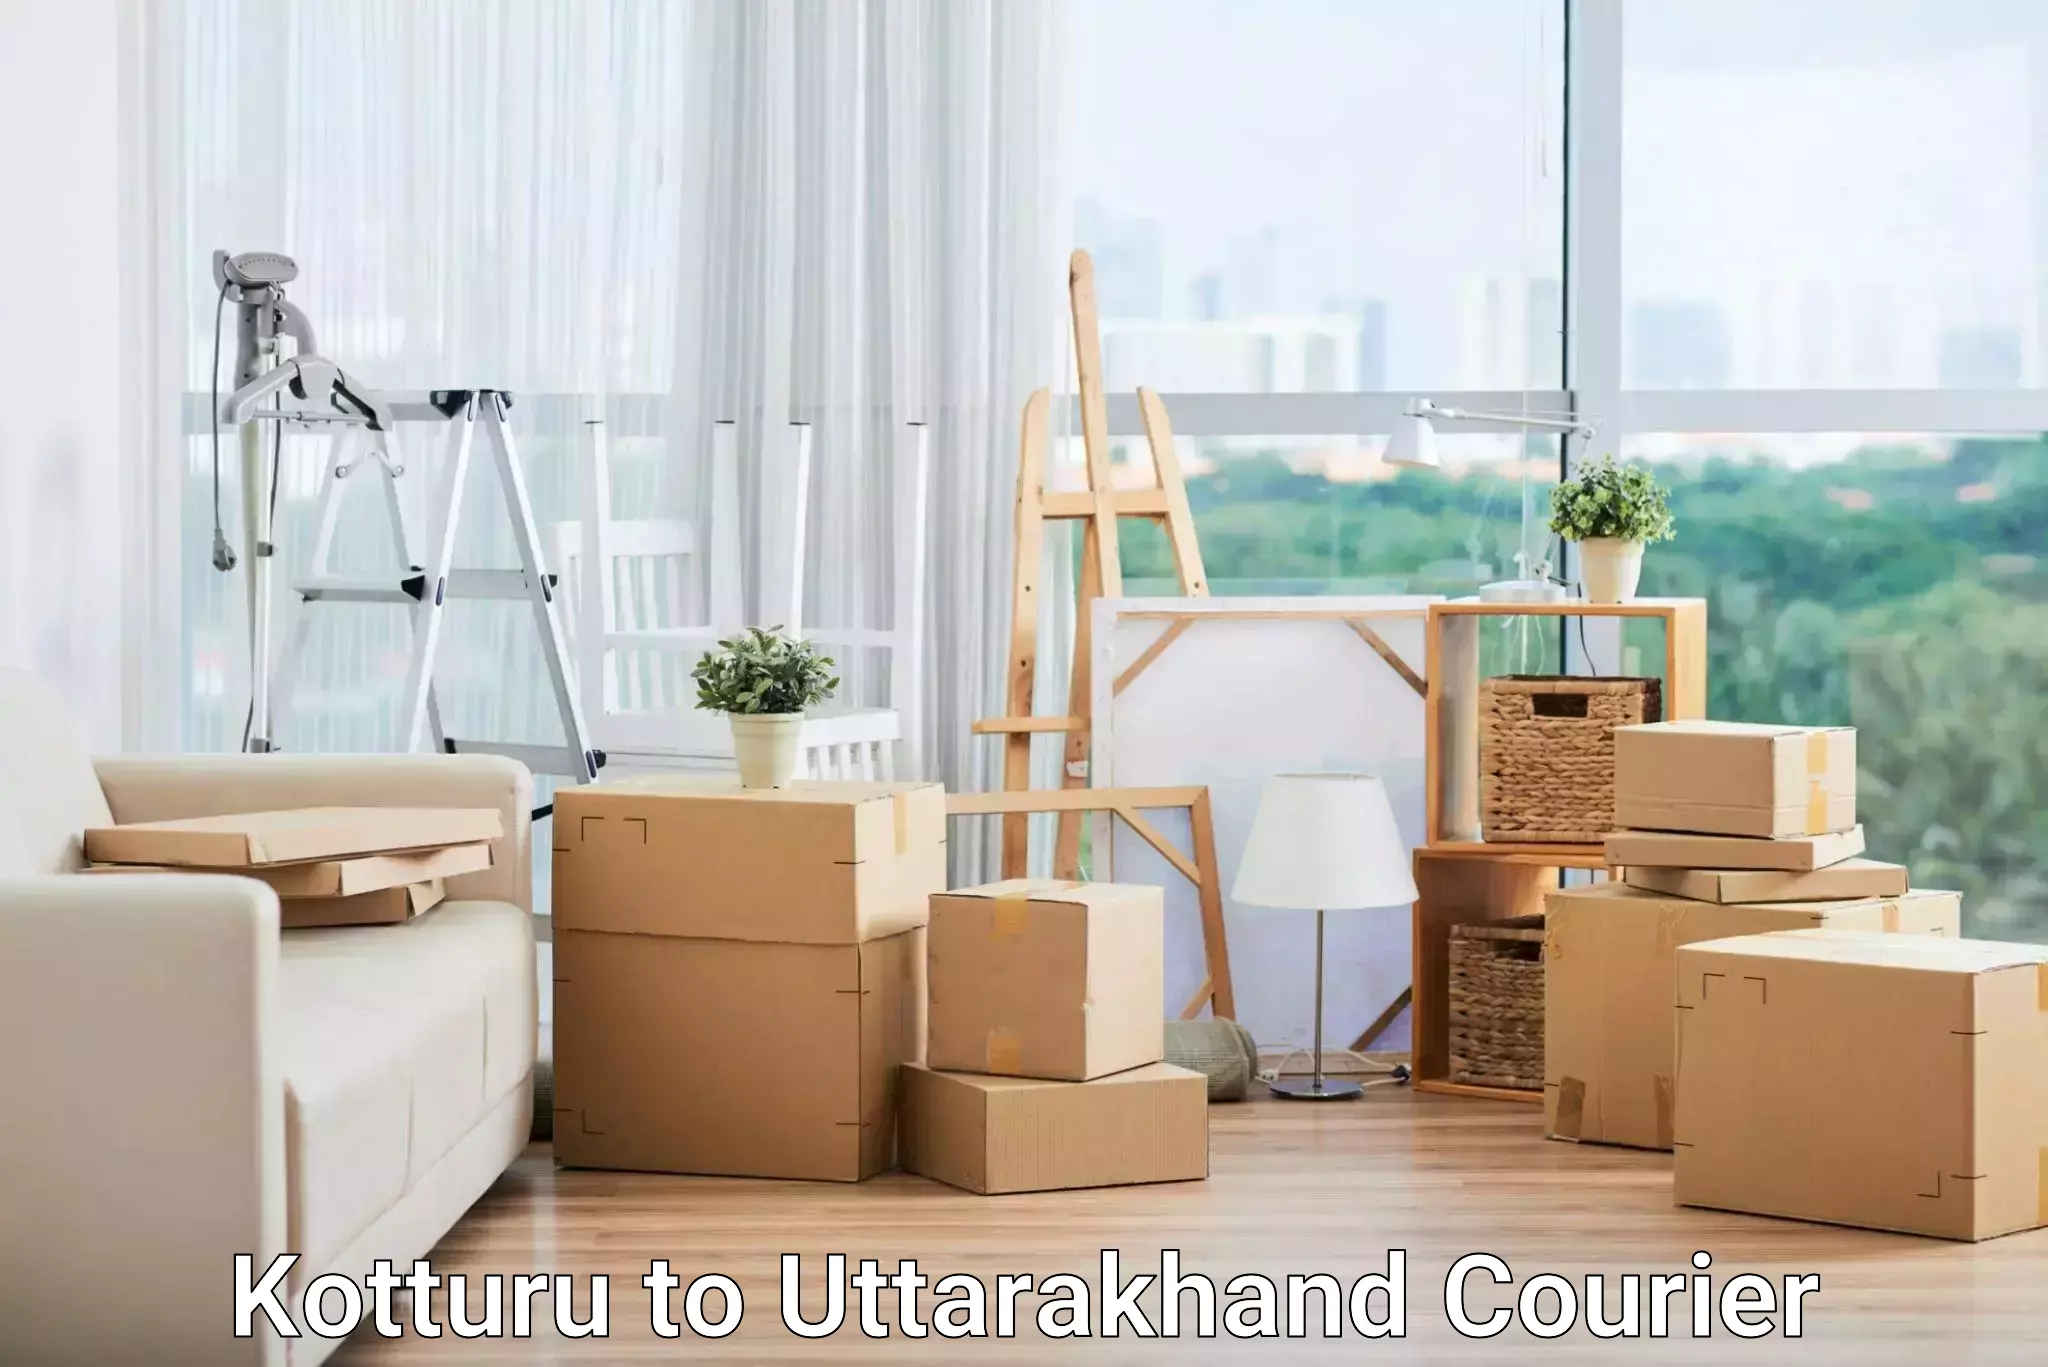 Professional parcel services Kotturu to IIT Roorkee